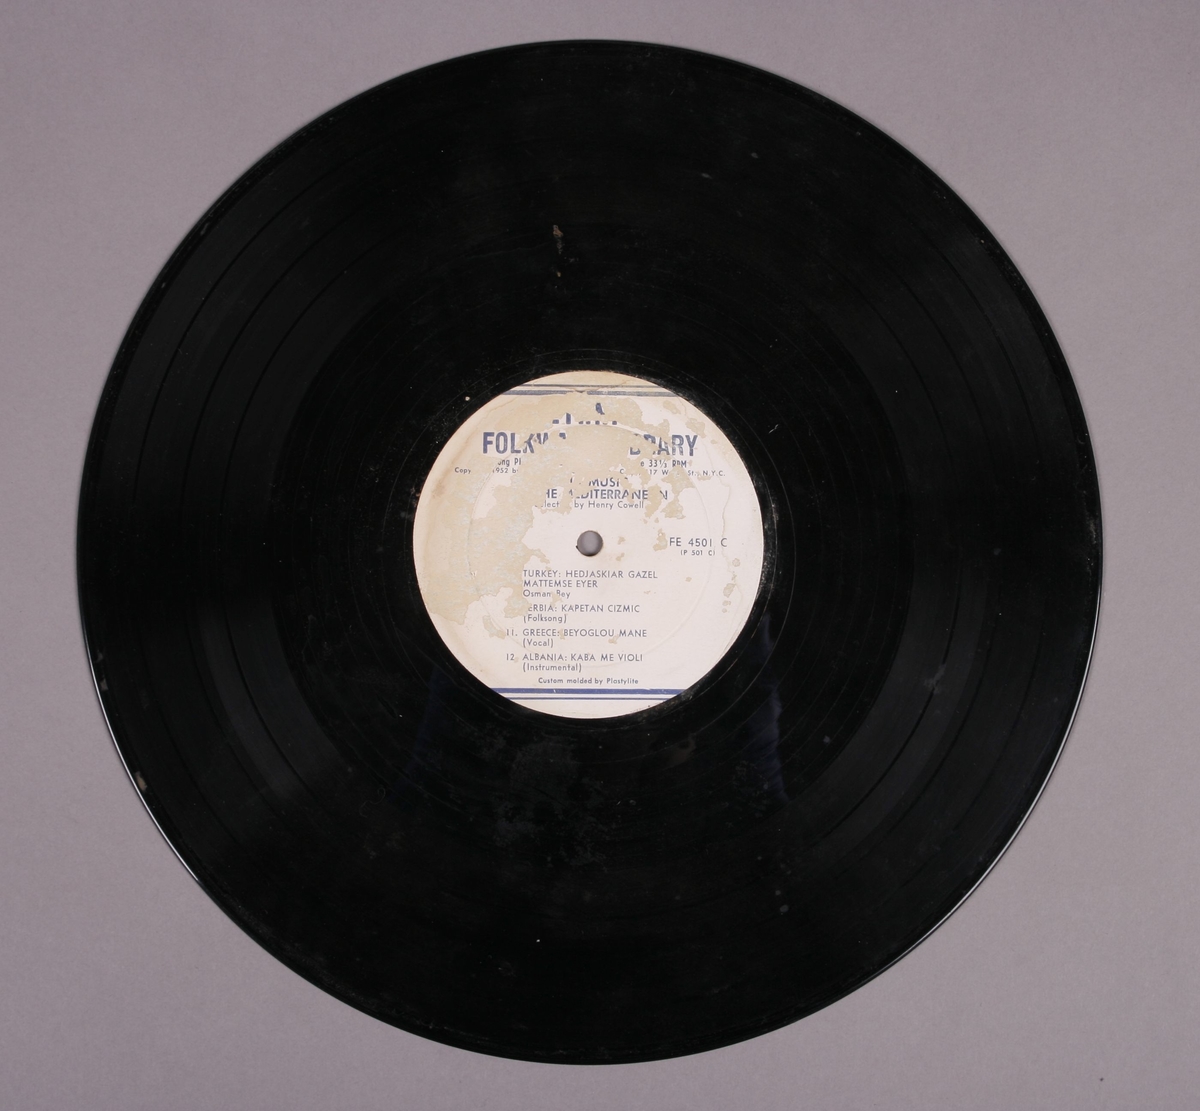 Grammofonplate i svart vinyl. Plata ligger i en papirlomme med plastfôr. Ligger ved også to hefter med beskrivelse av musikken (se bilde).